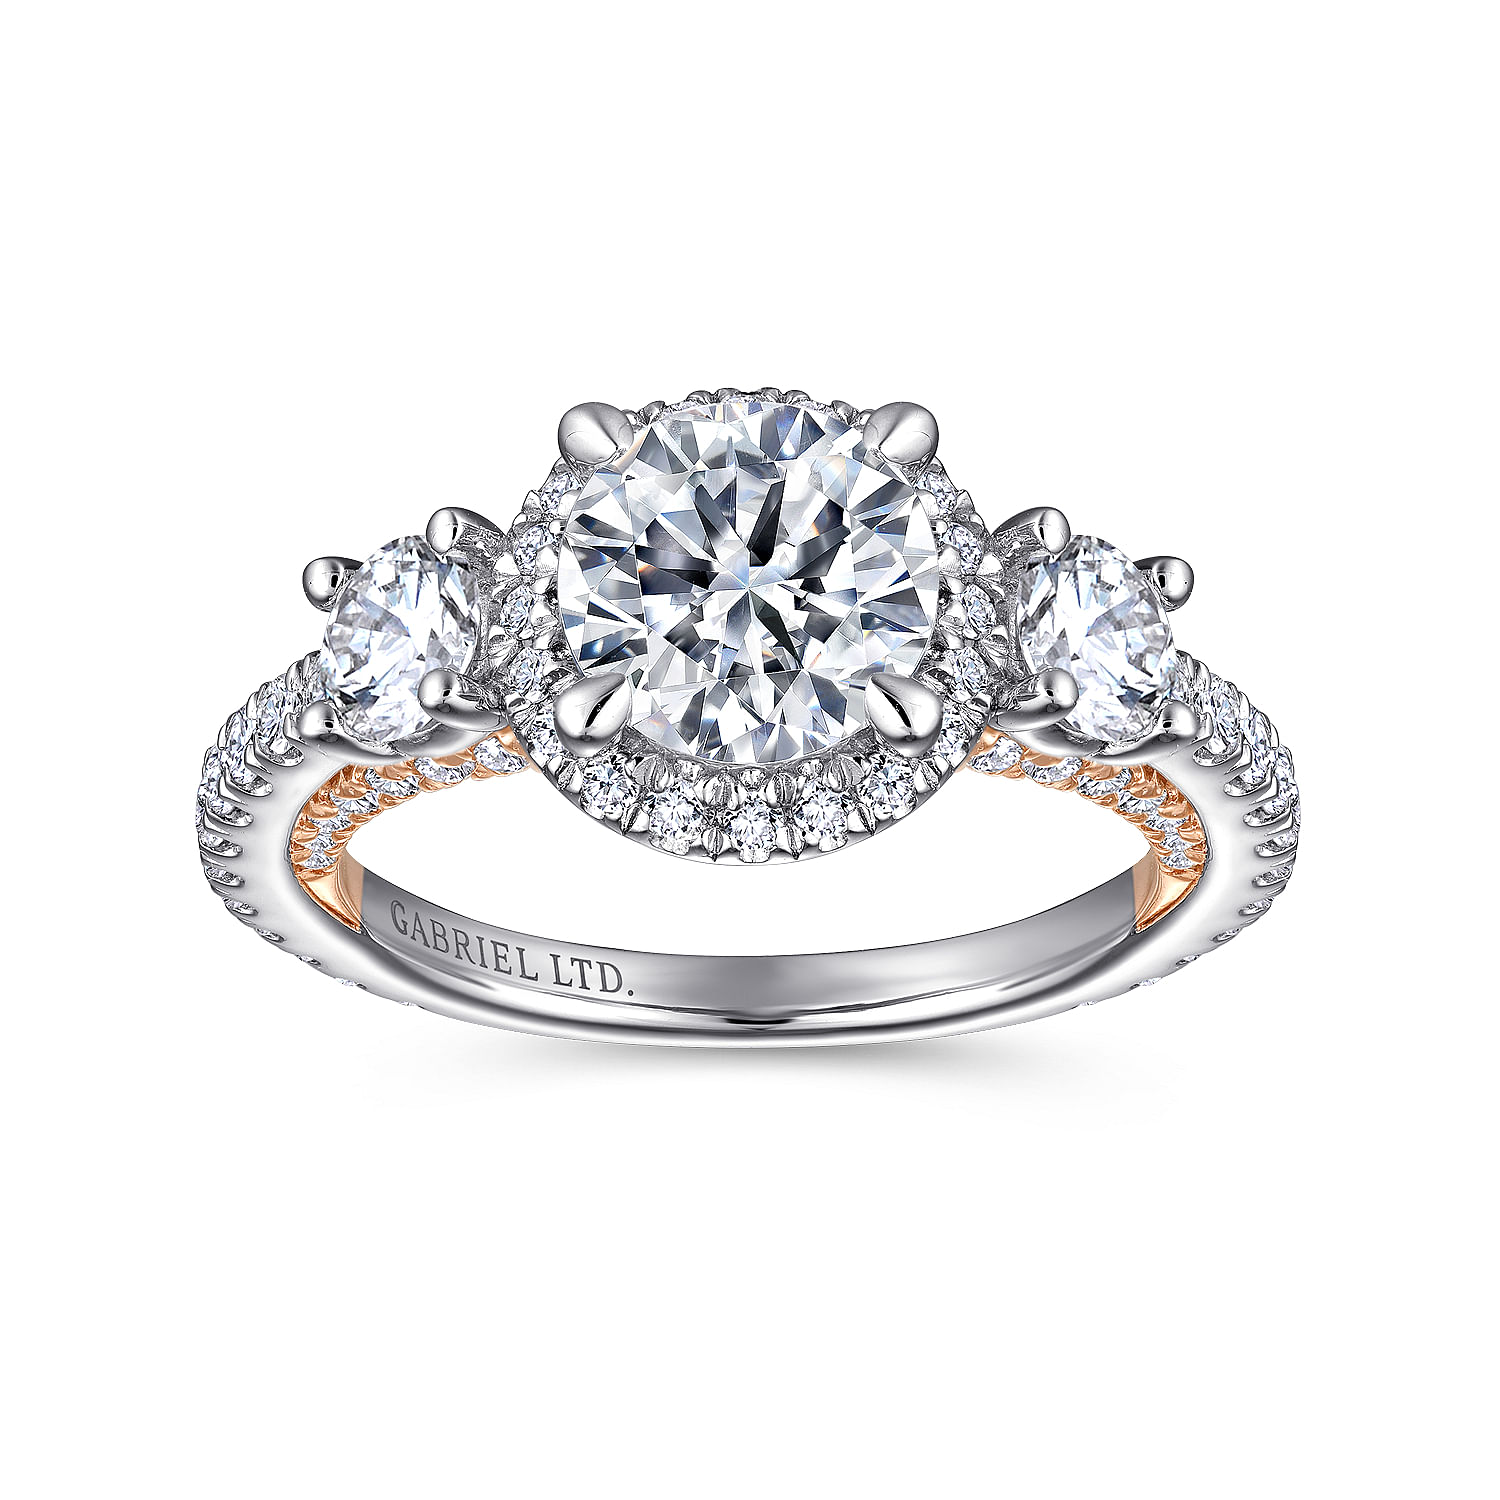 18K White-Rose Gold Round Three Stone Diamond Engagement Ring